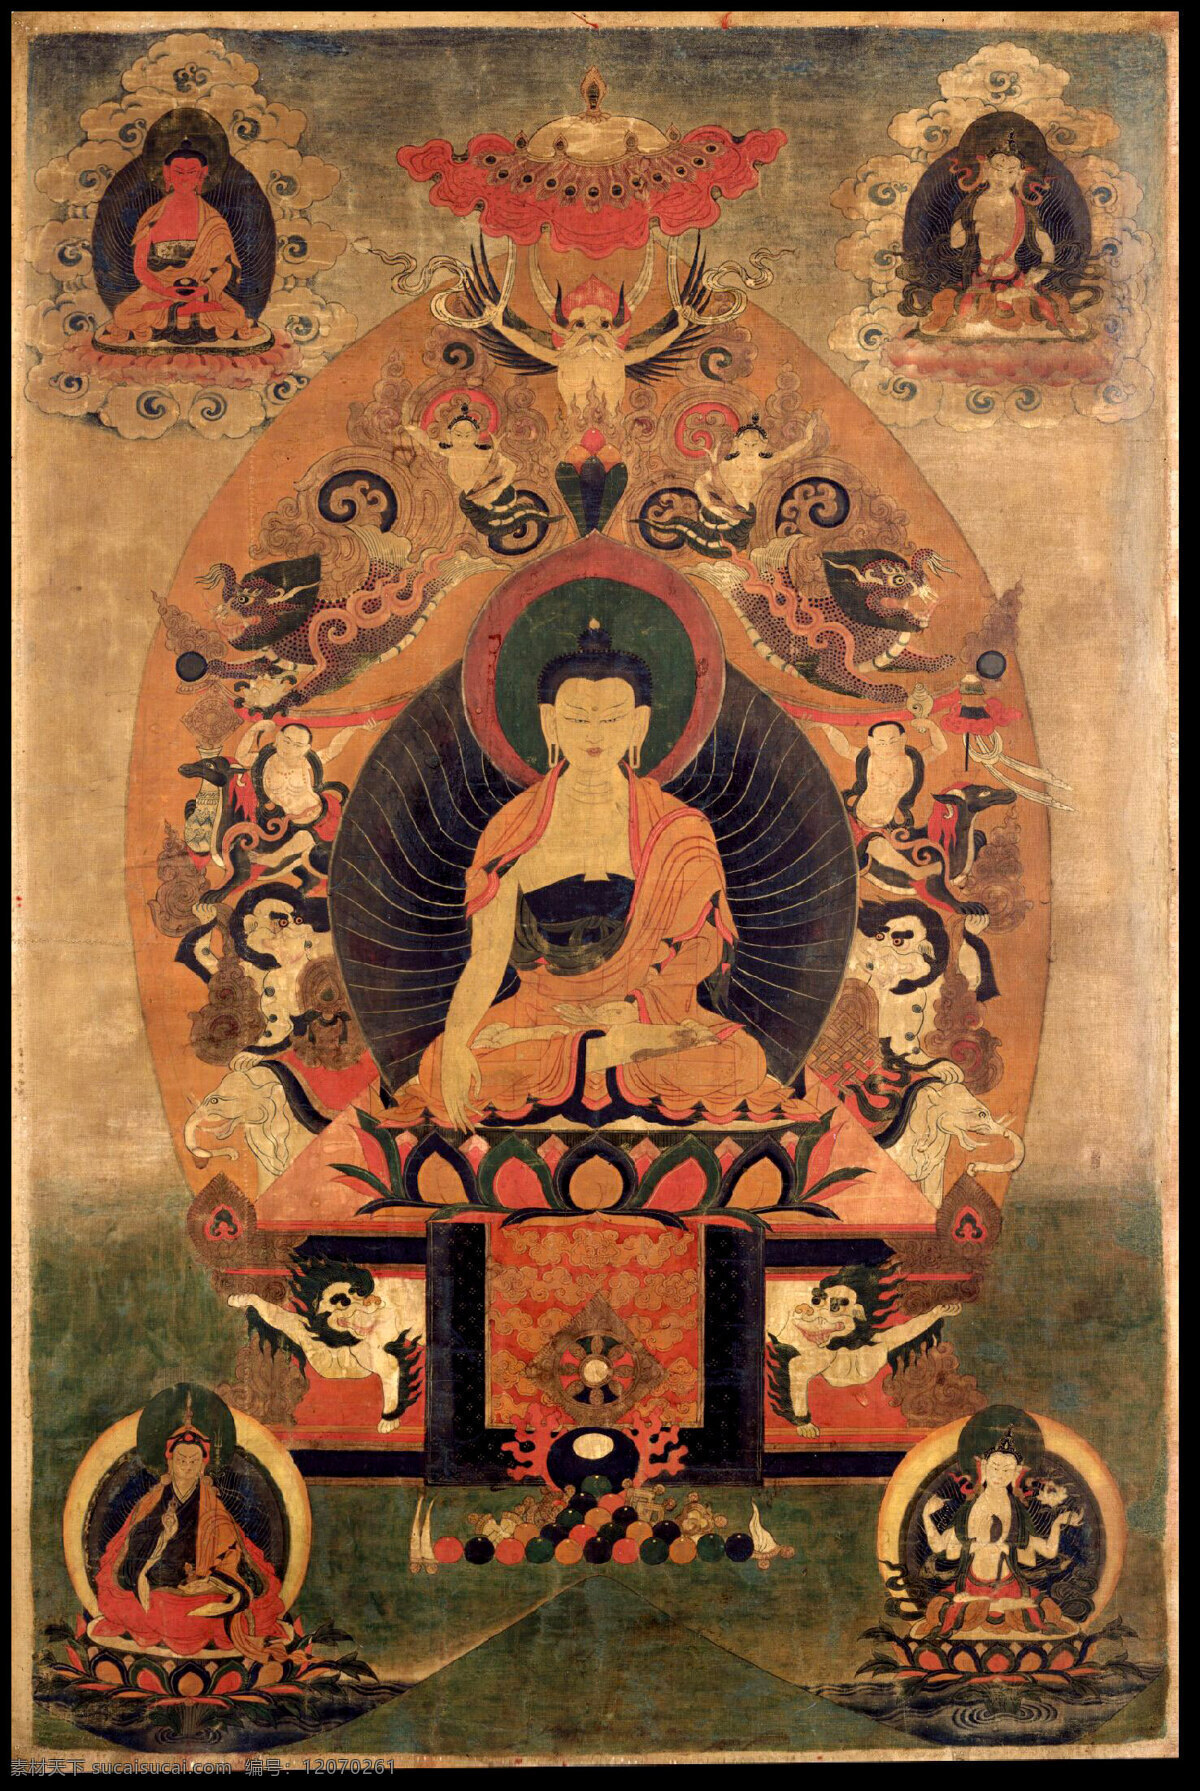 释迦摩尼佛 佛教 佛像 唐卡 宗教信仰 文化艺术